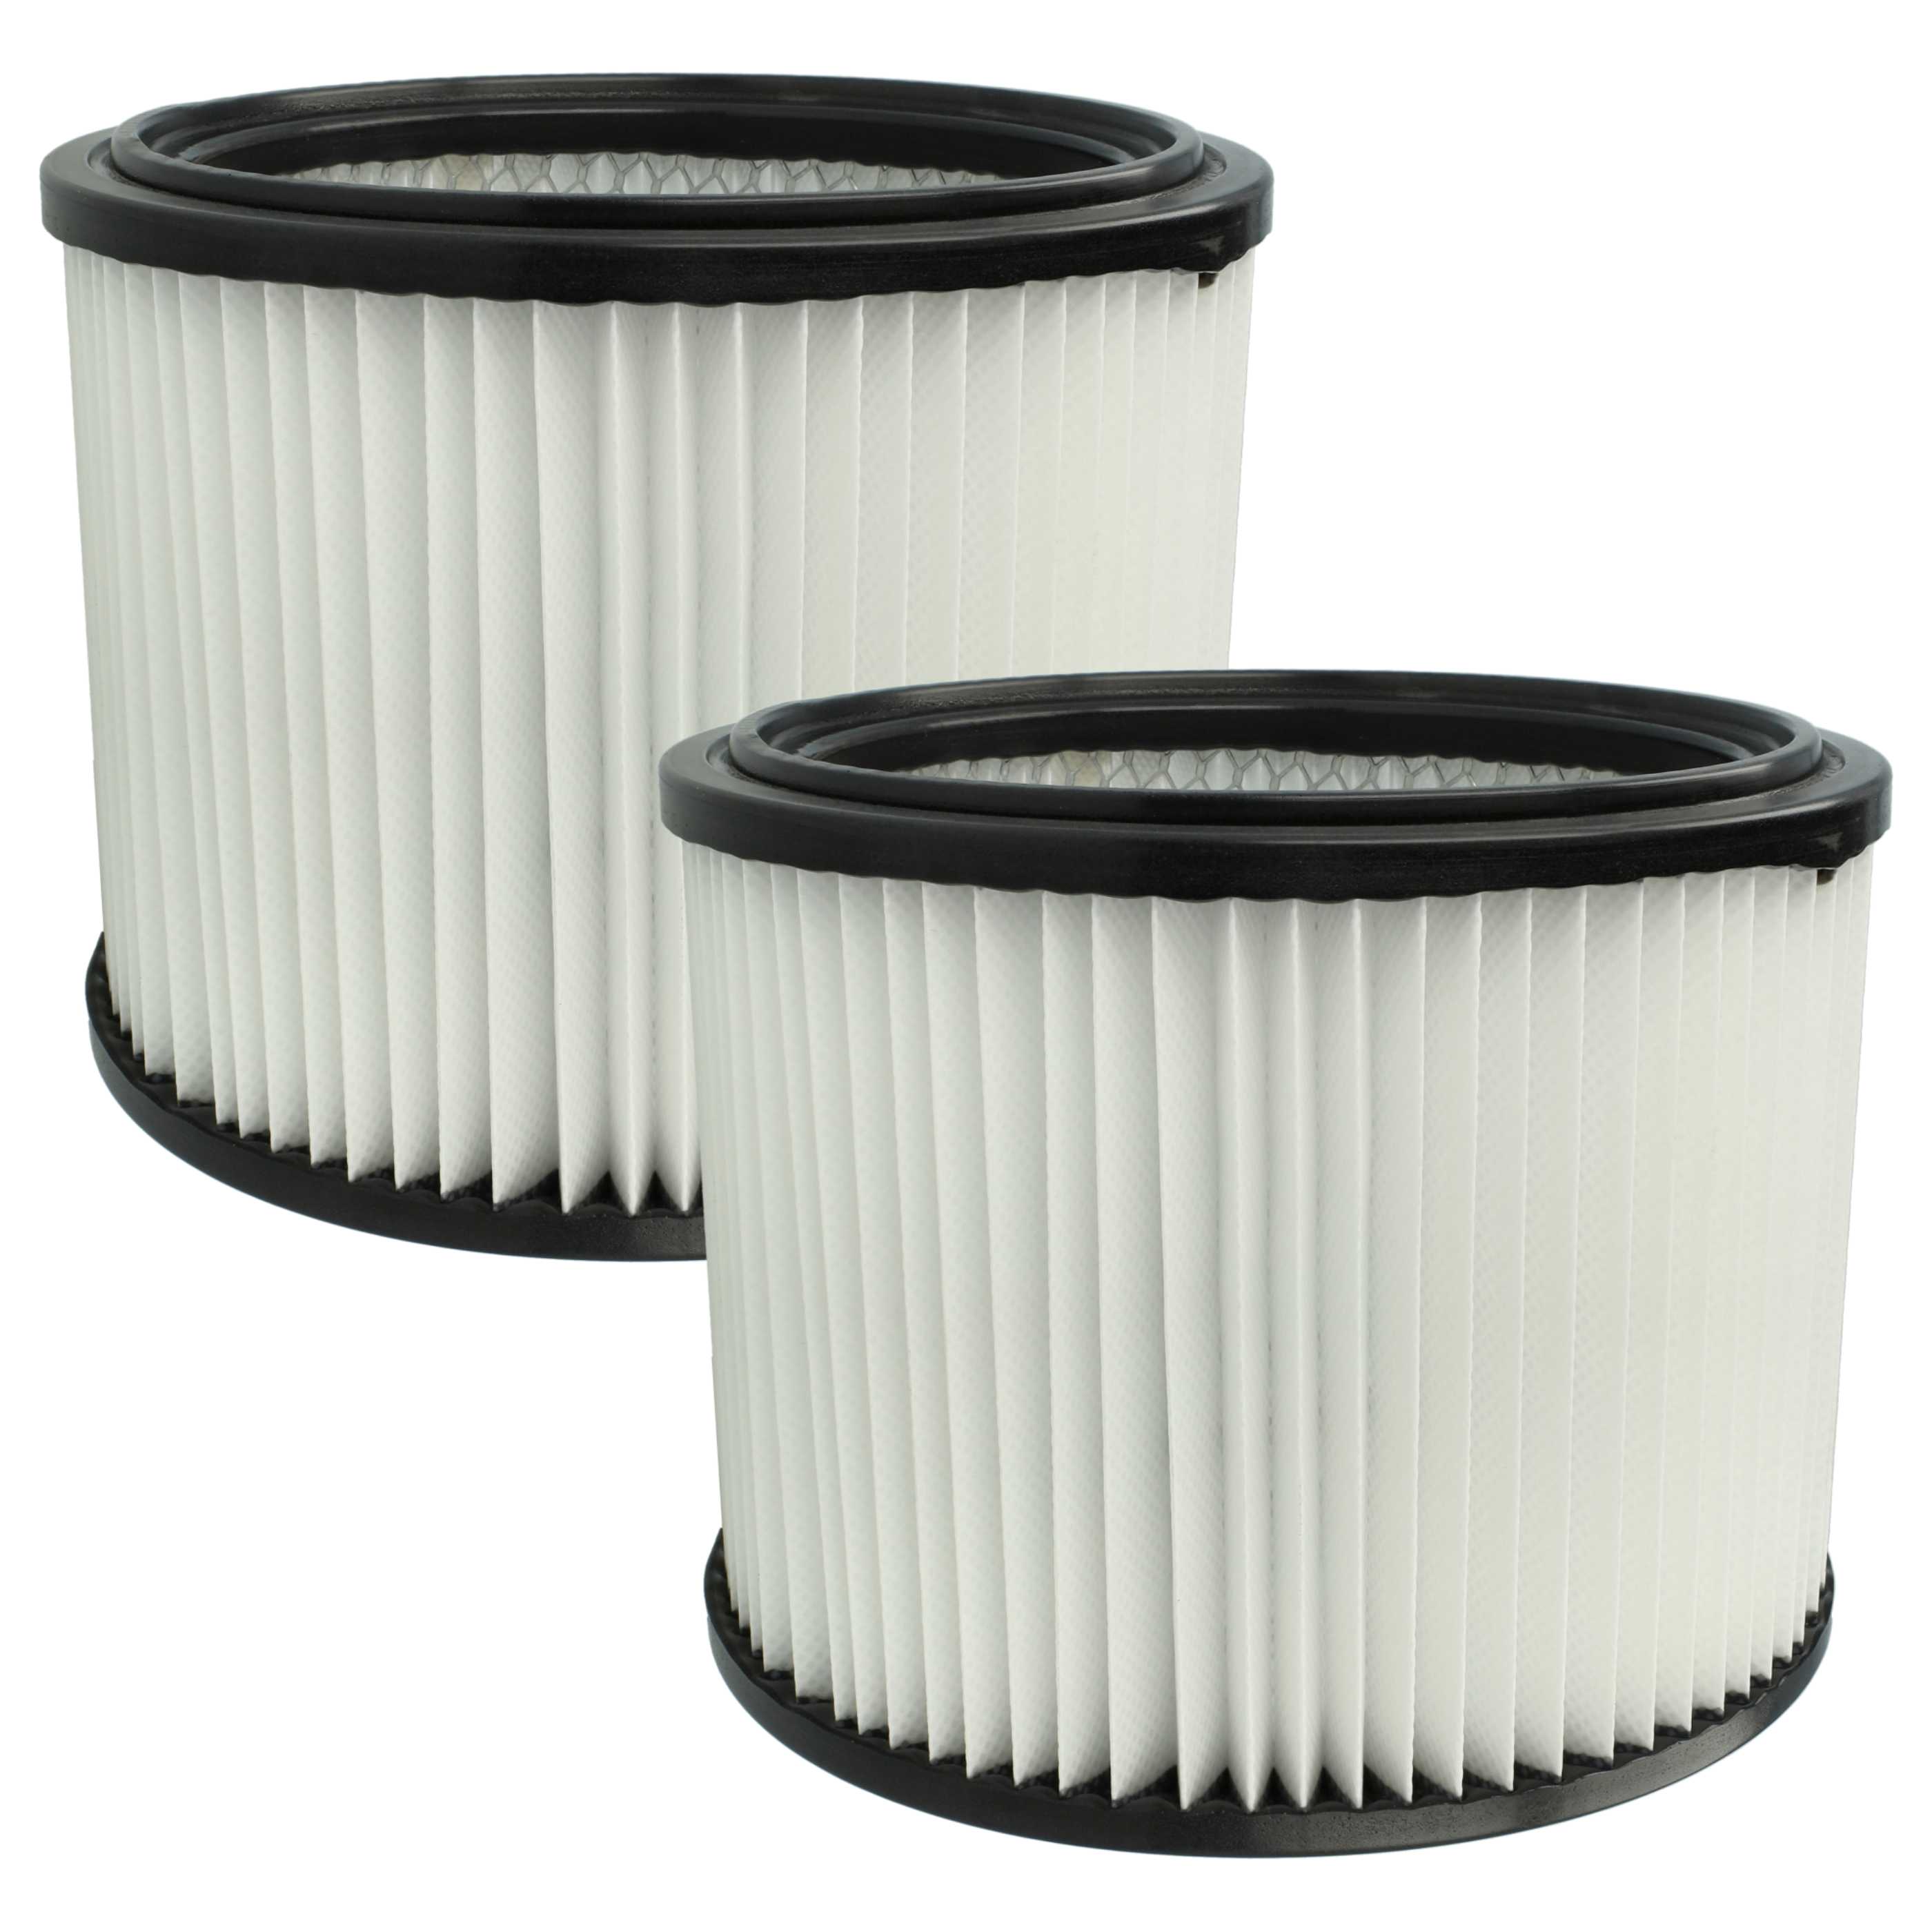 2x Filtro sostituisce Starmix FPP 3500 WS, 460727 per aspirapolvere - filtro a pieghe, nero / bianco